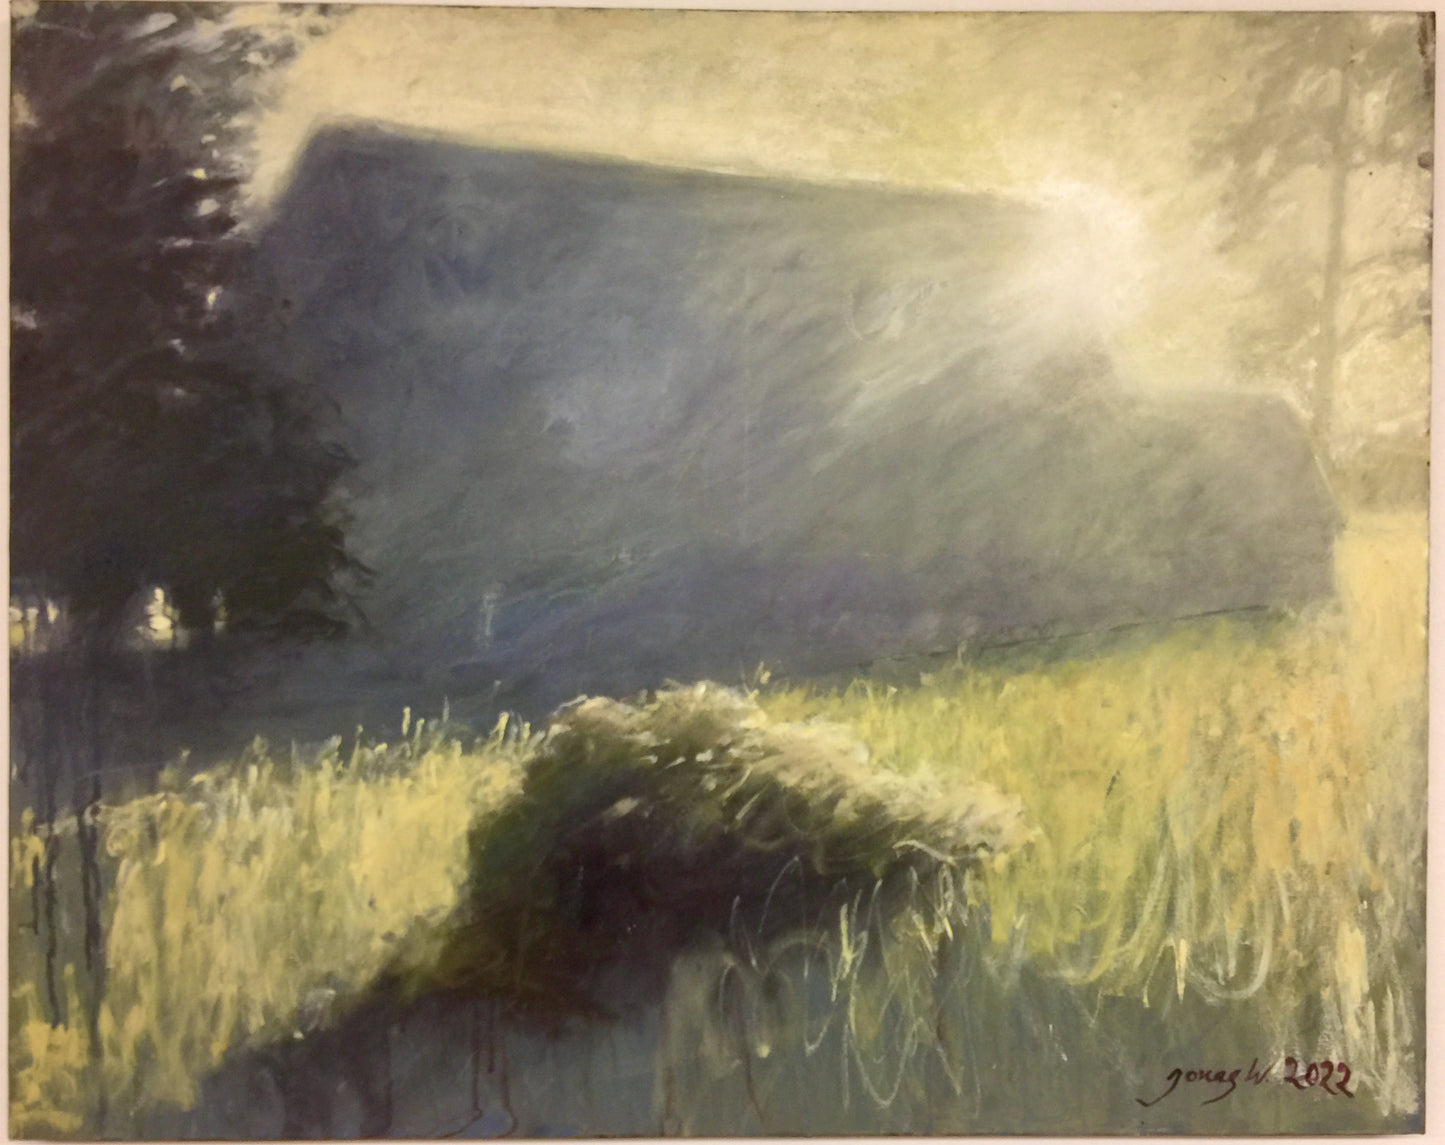 Jonas Wickman - Bakom lagårn (Behind the barn), oil on canvas